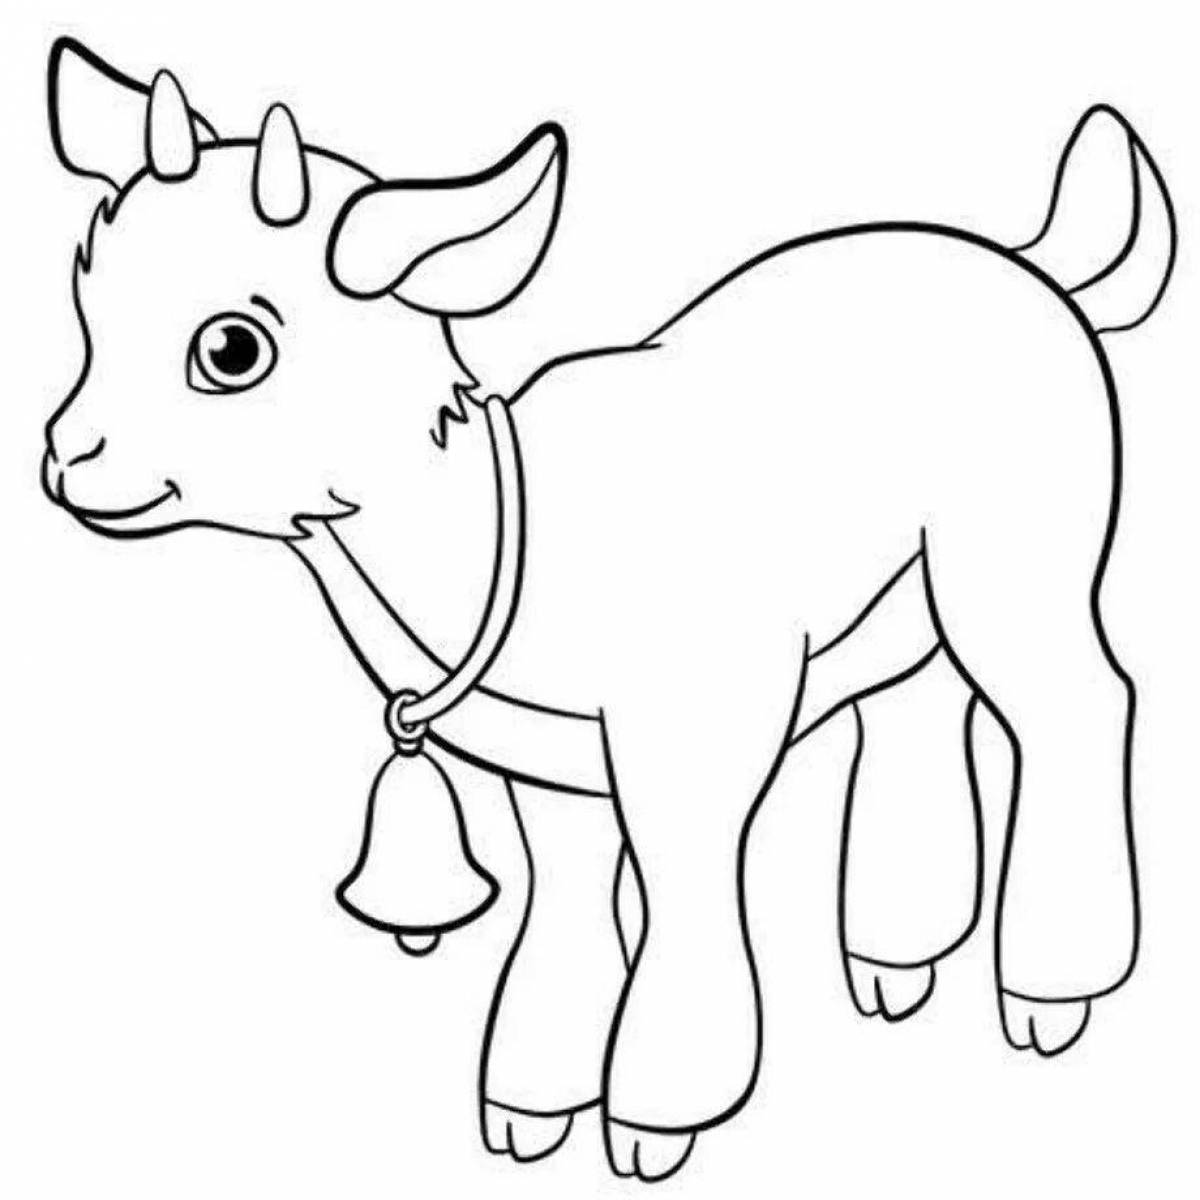 Веселая раскраска коз для детей